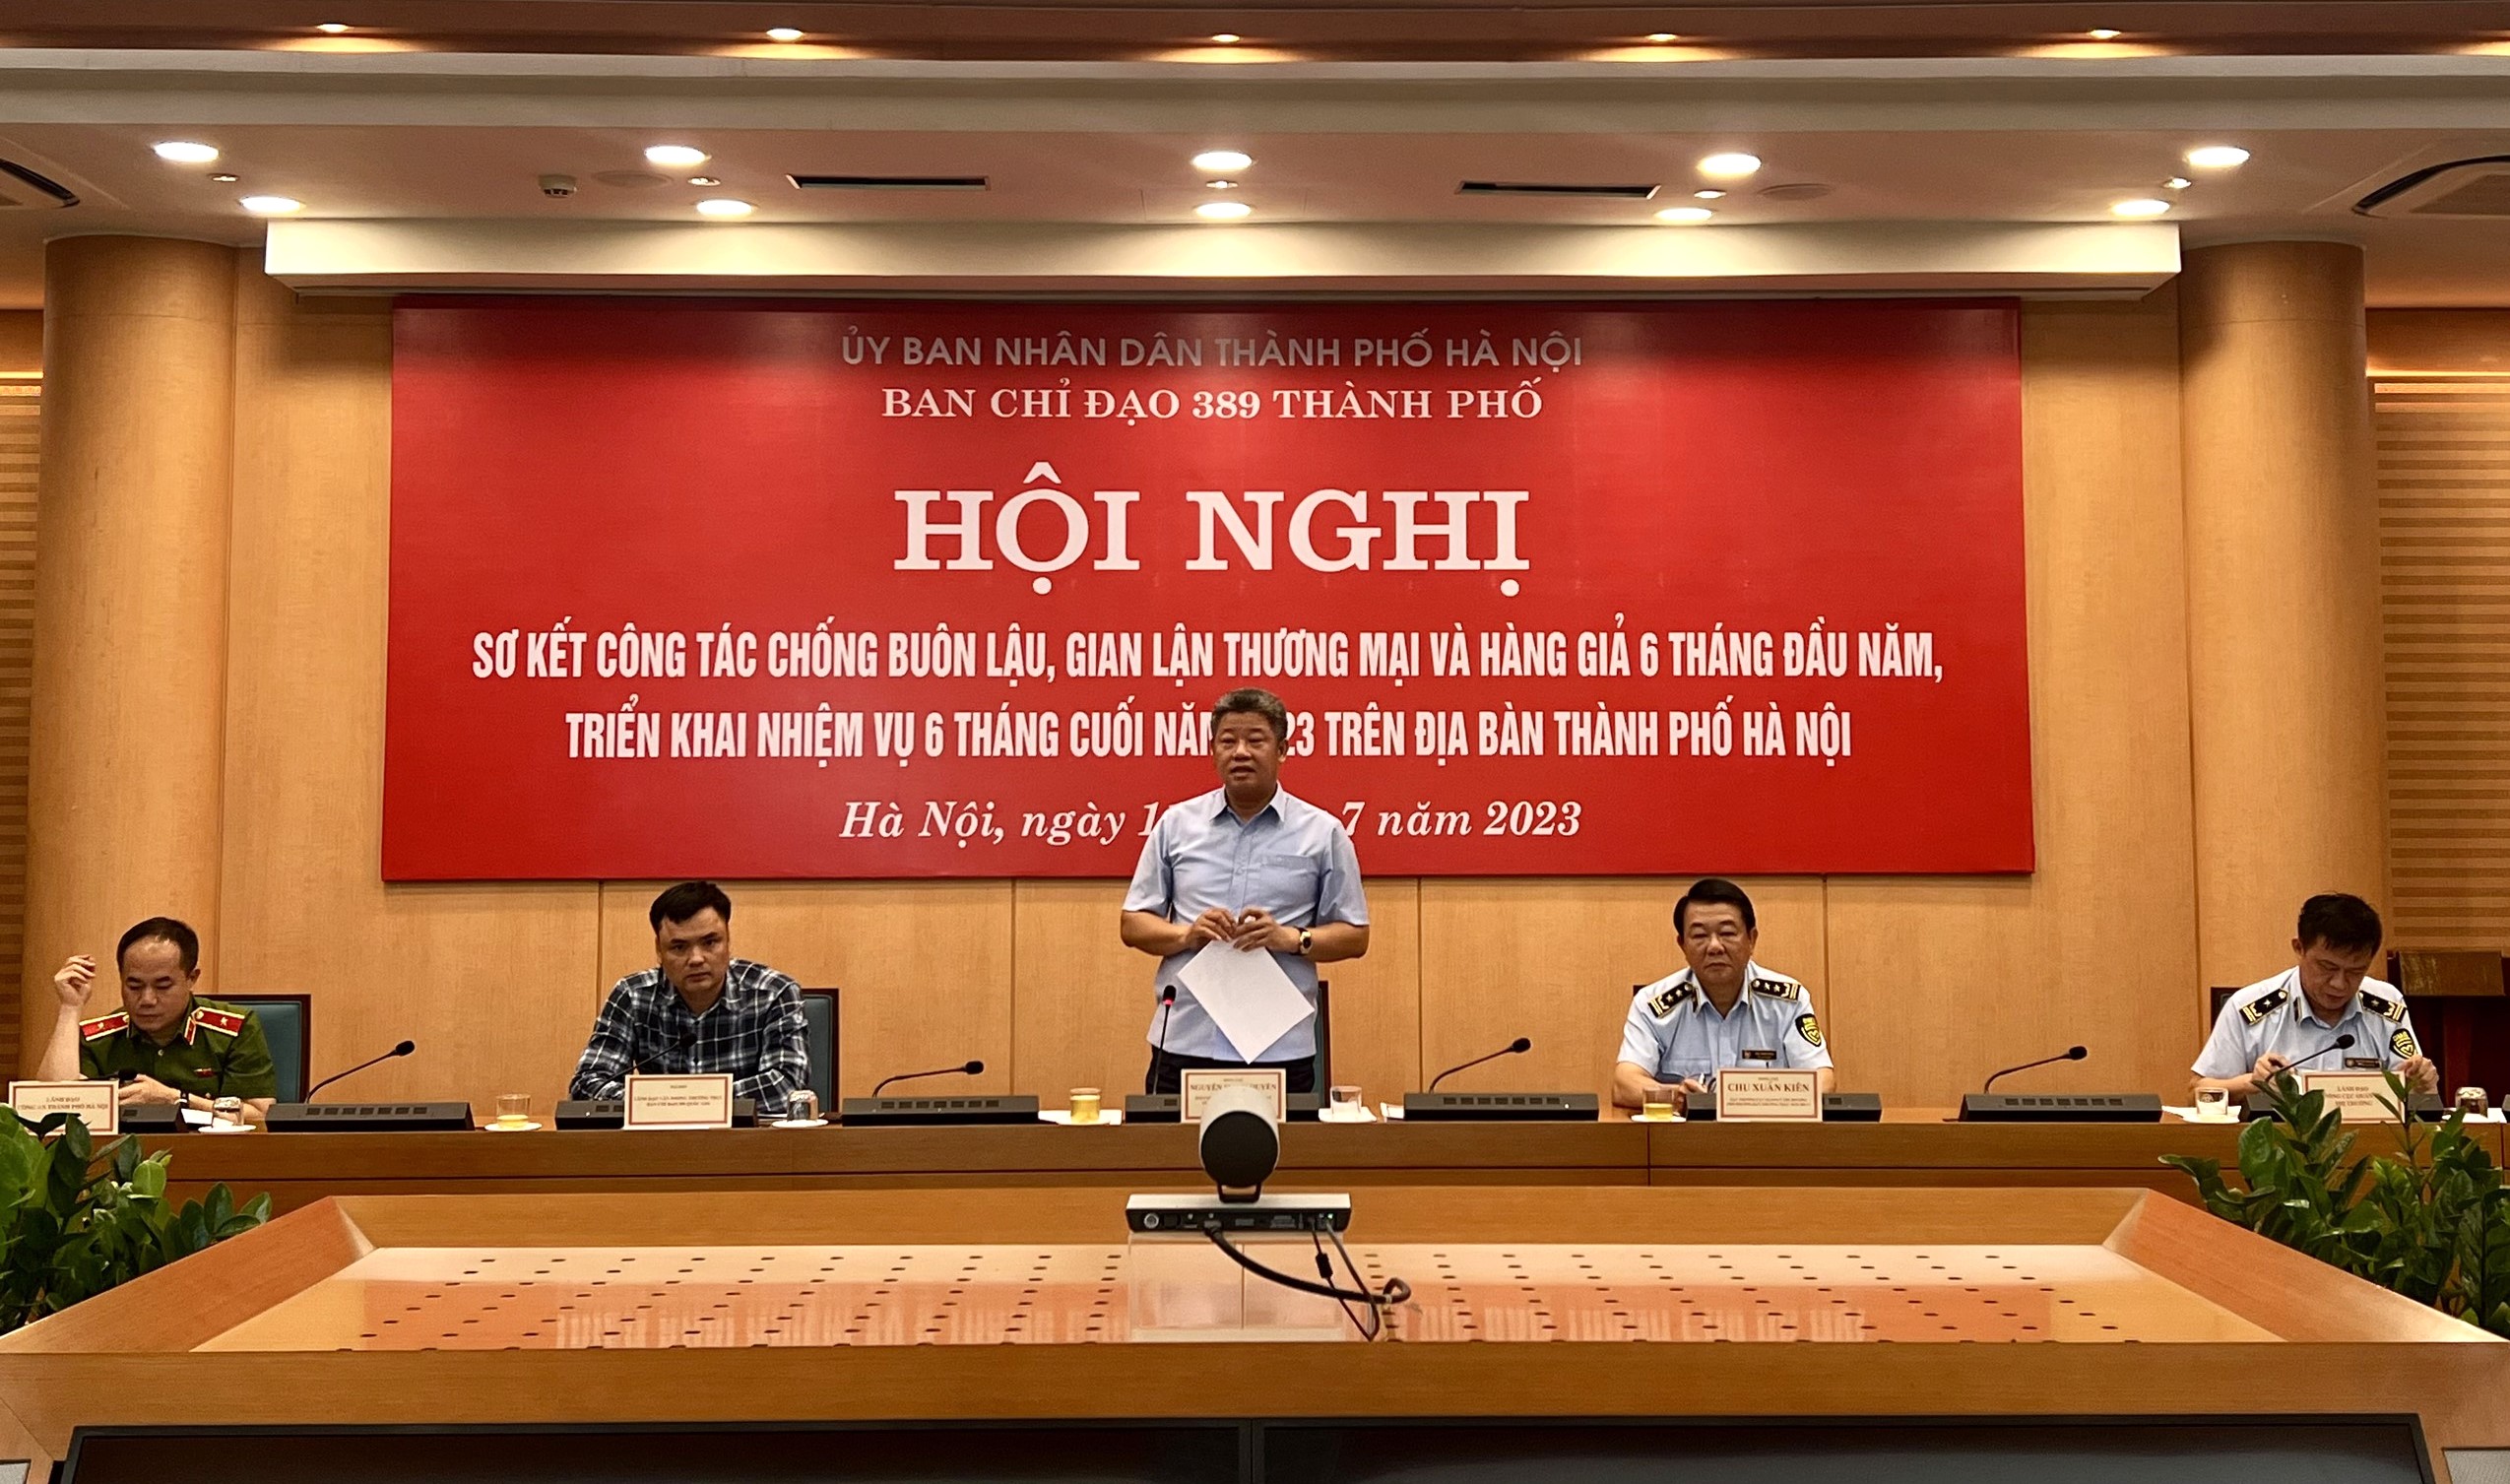 Phó chủ tịch UBND, Trưởng ban chỉ đạo 389 Hà Nội, Nguyễn Mạnh Quyền chủ trì hội nghị.